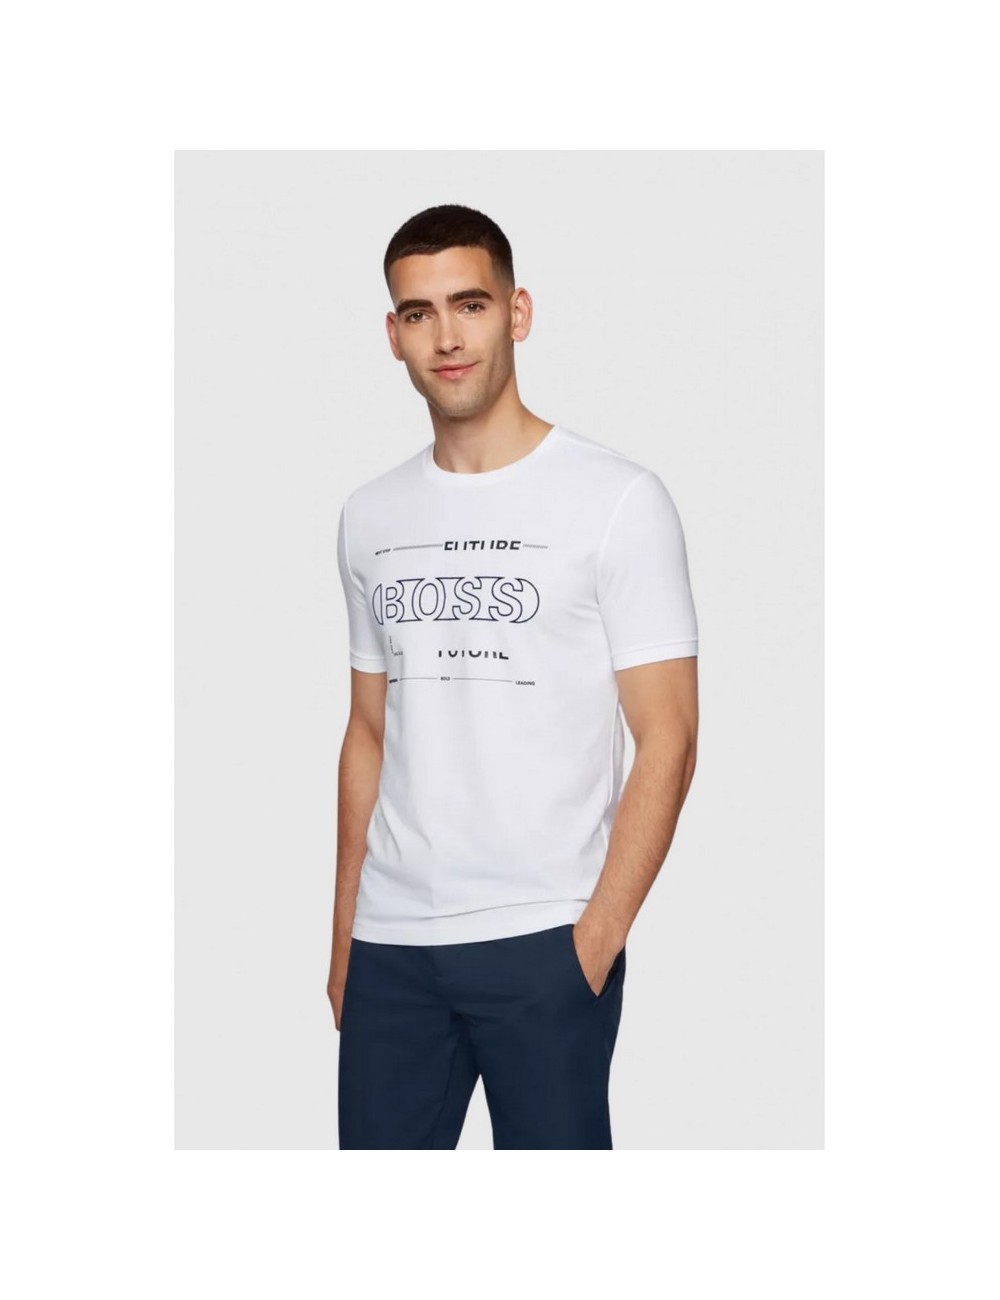 Hugo Boss Tee 2 White T -Shirt